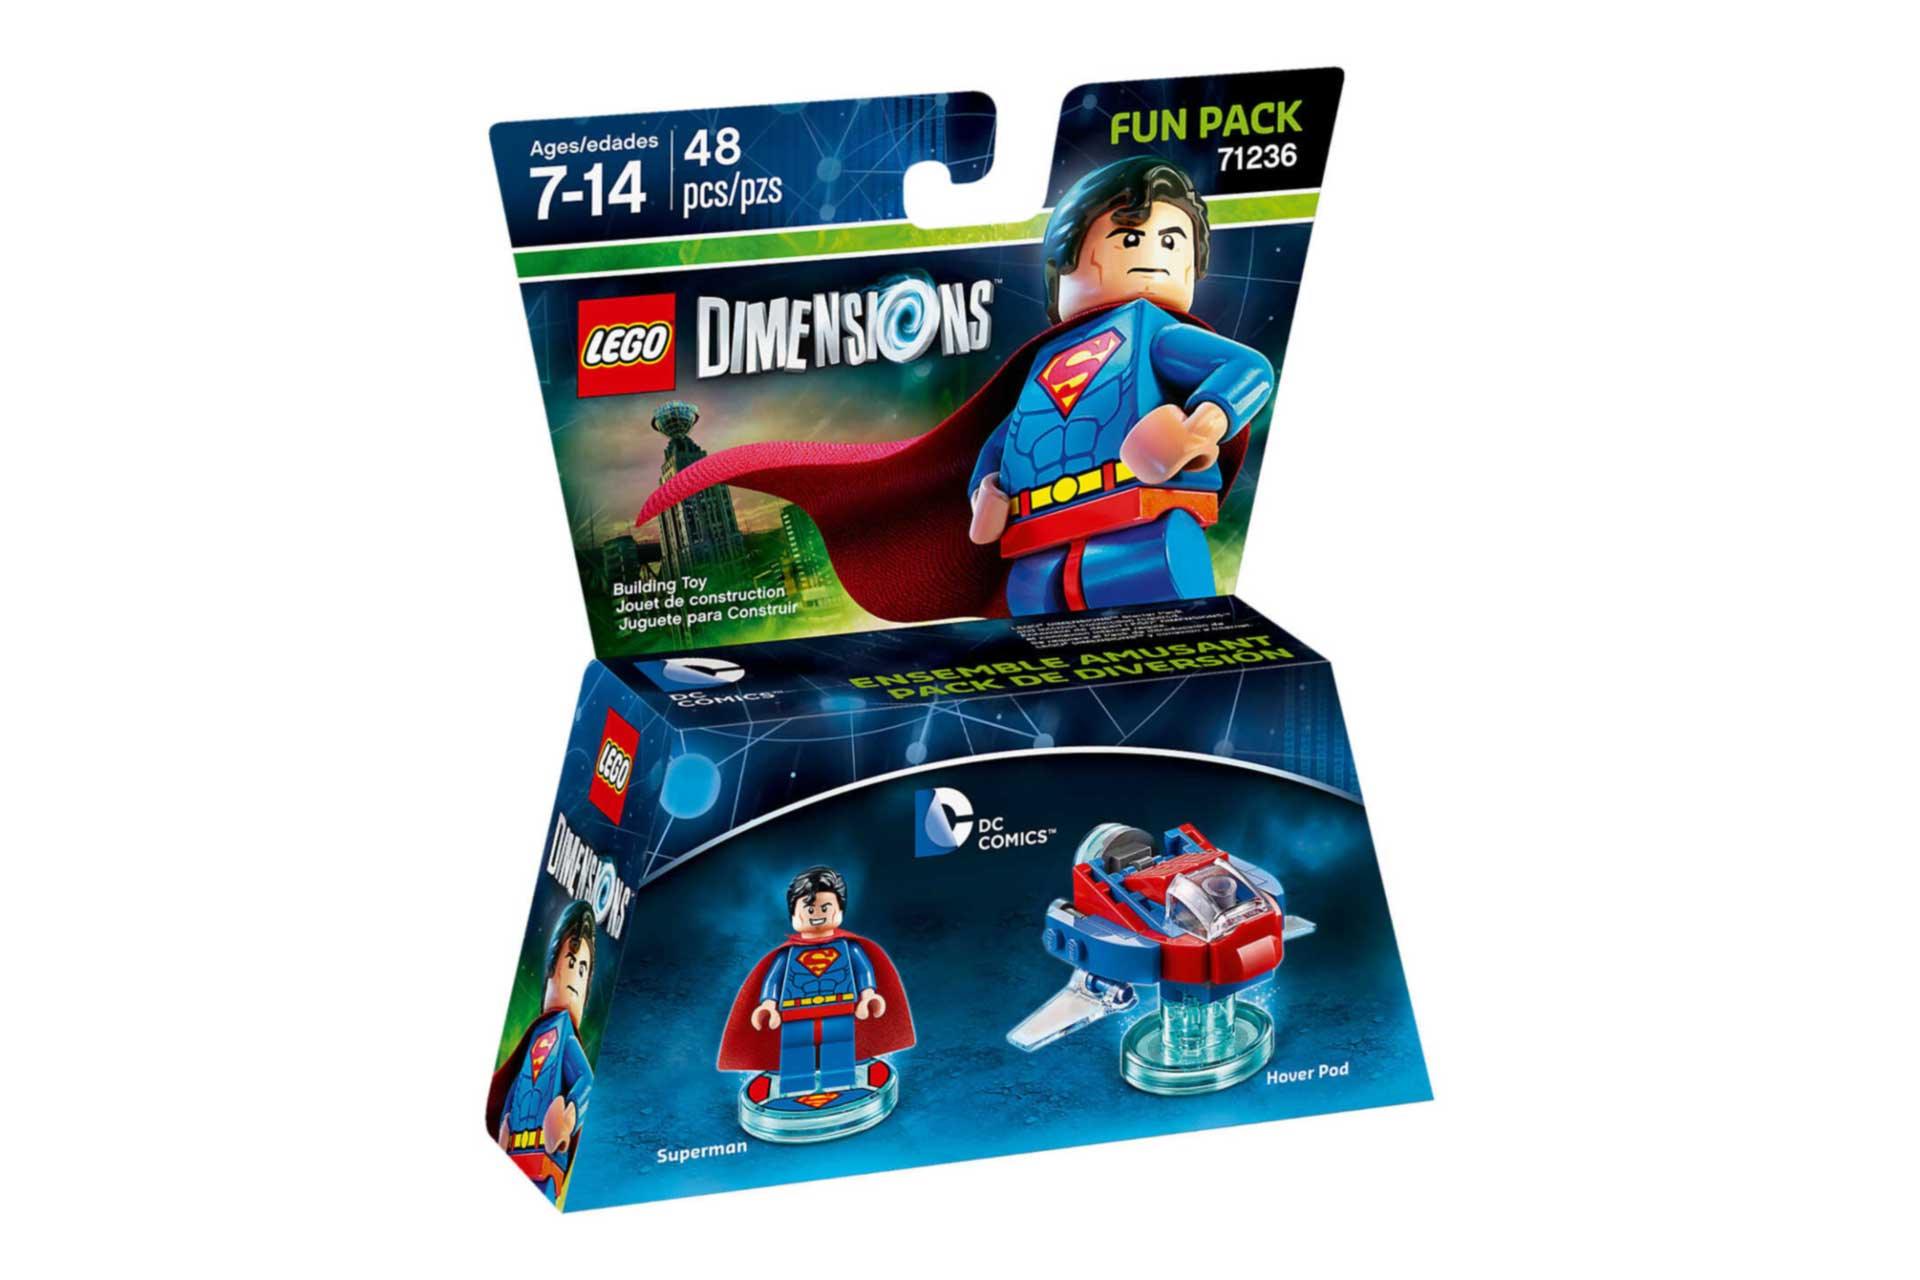 LEGO Superman Fun Pack 71236 Dimensions LEGO Dimensions @ 2TTOYS LEGO €. 14.99